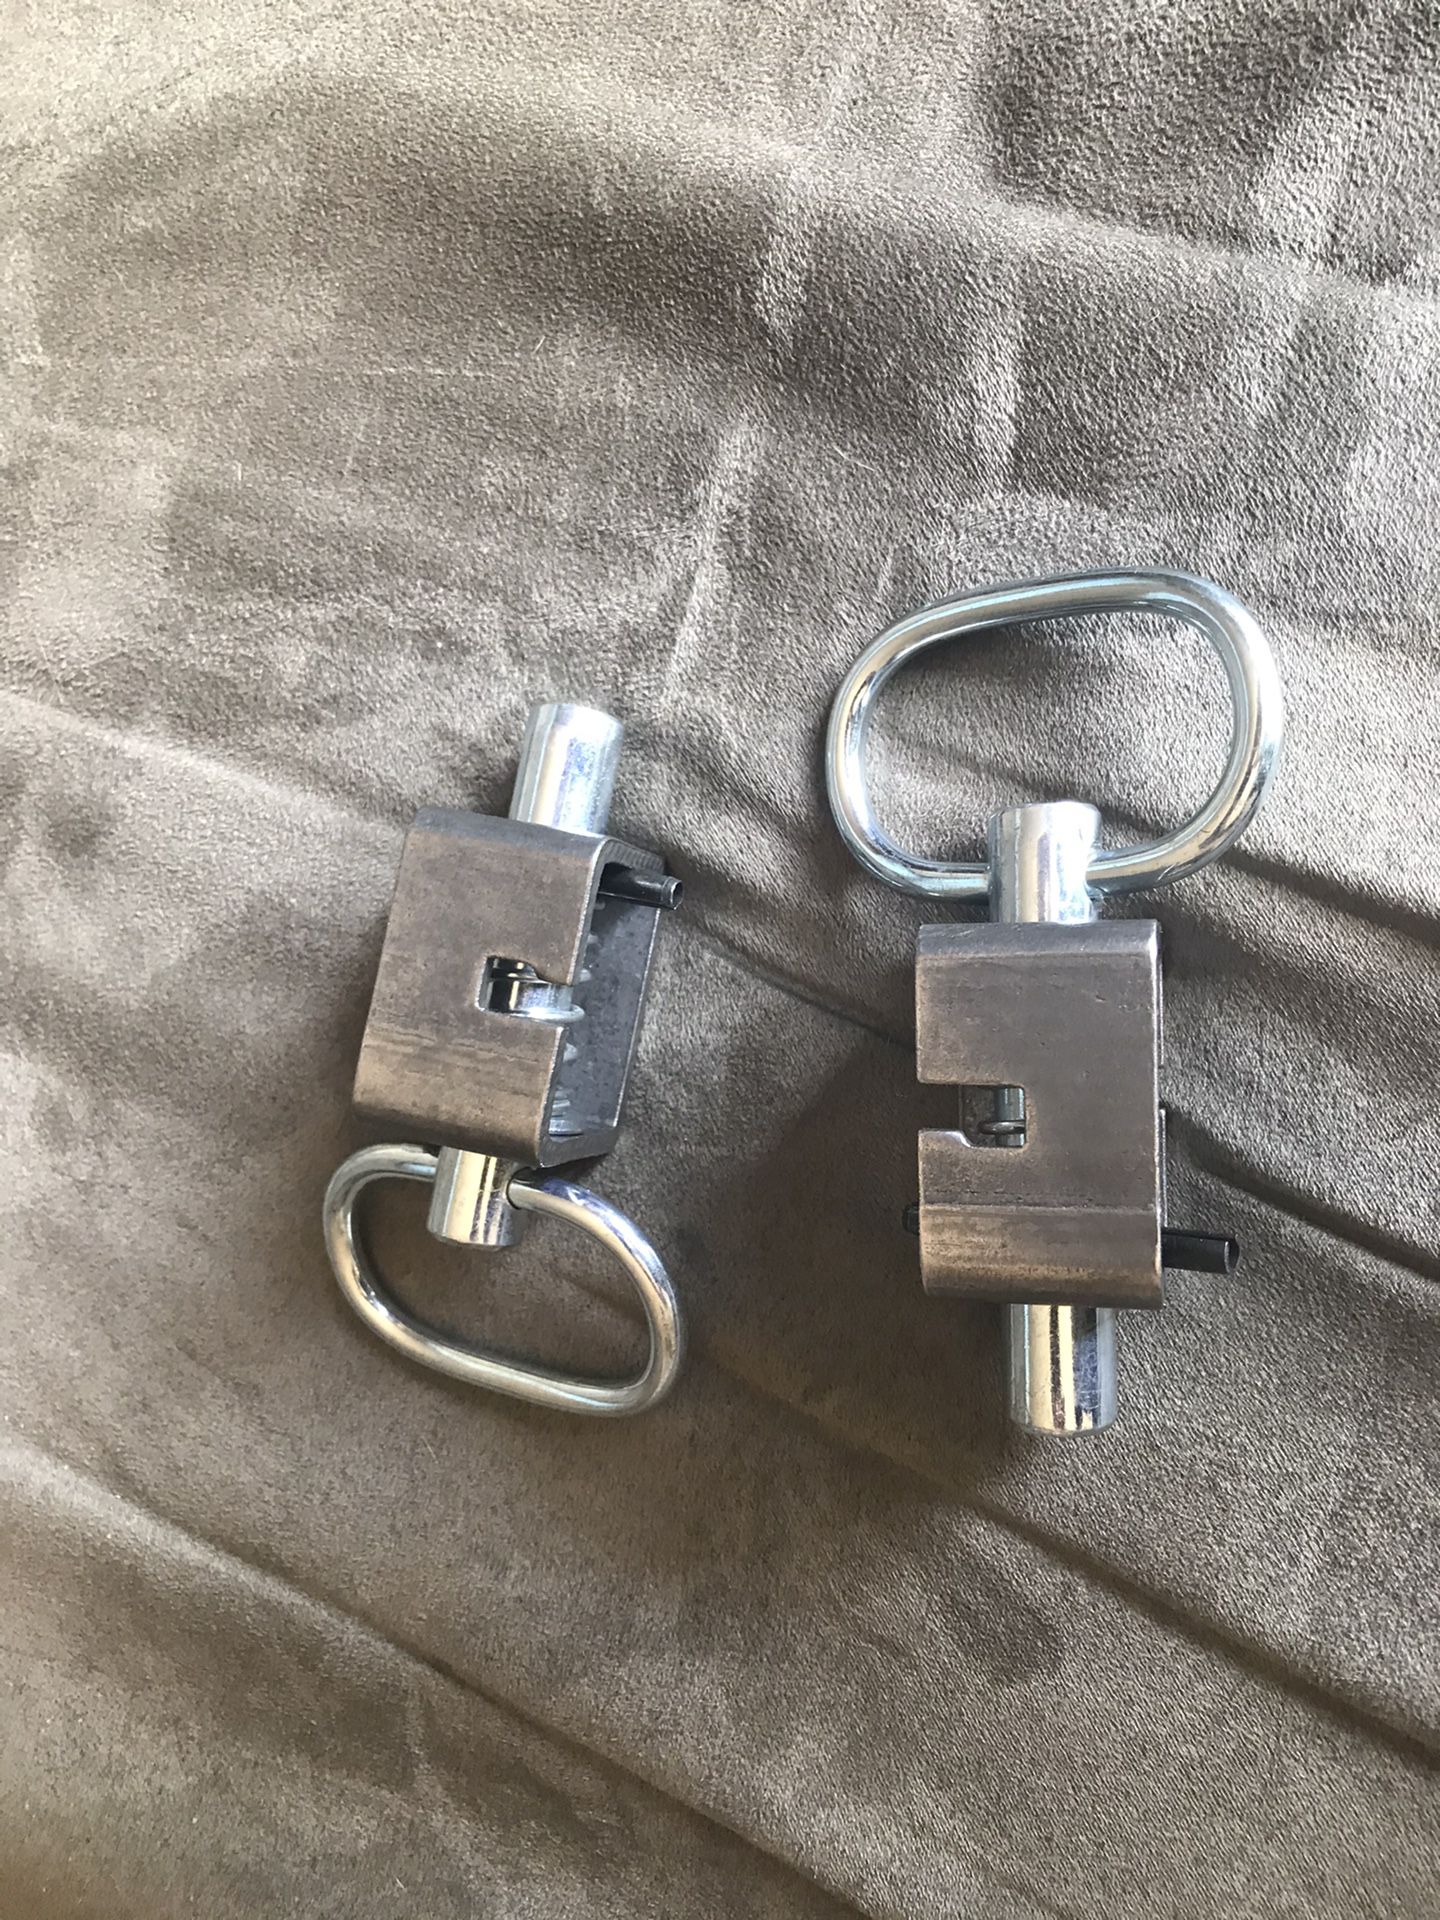 Heavy duty Utility trailer lock pins